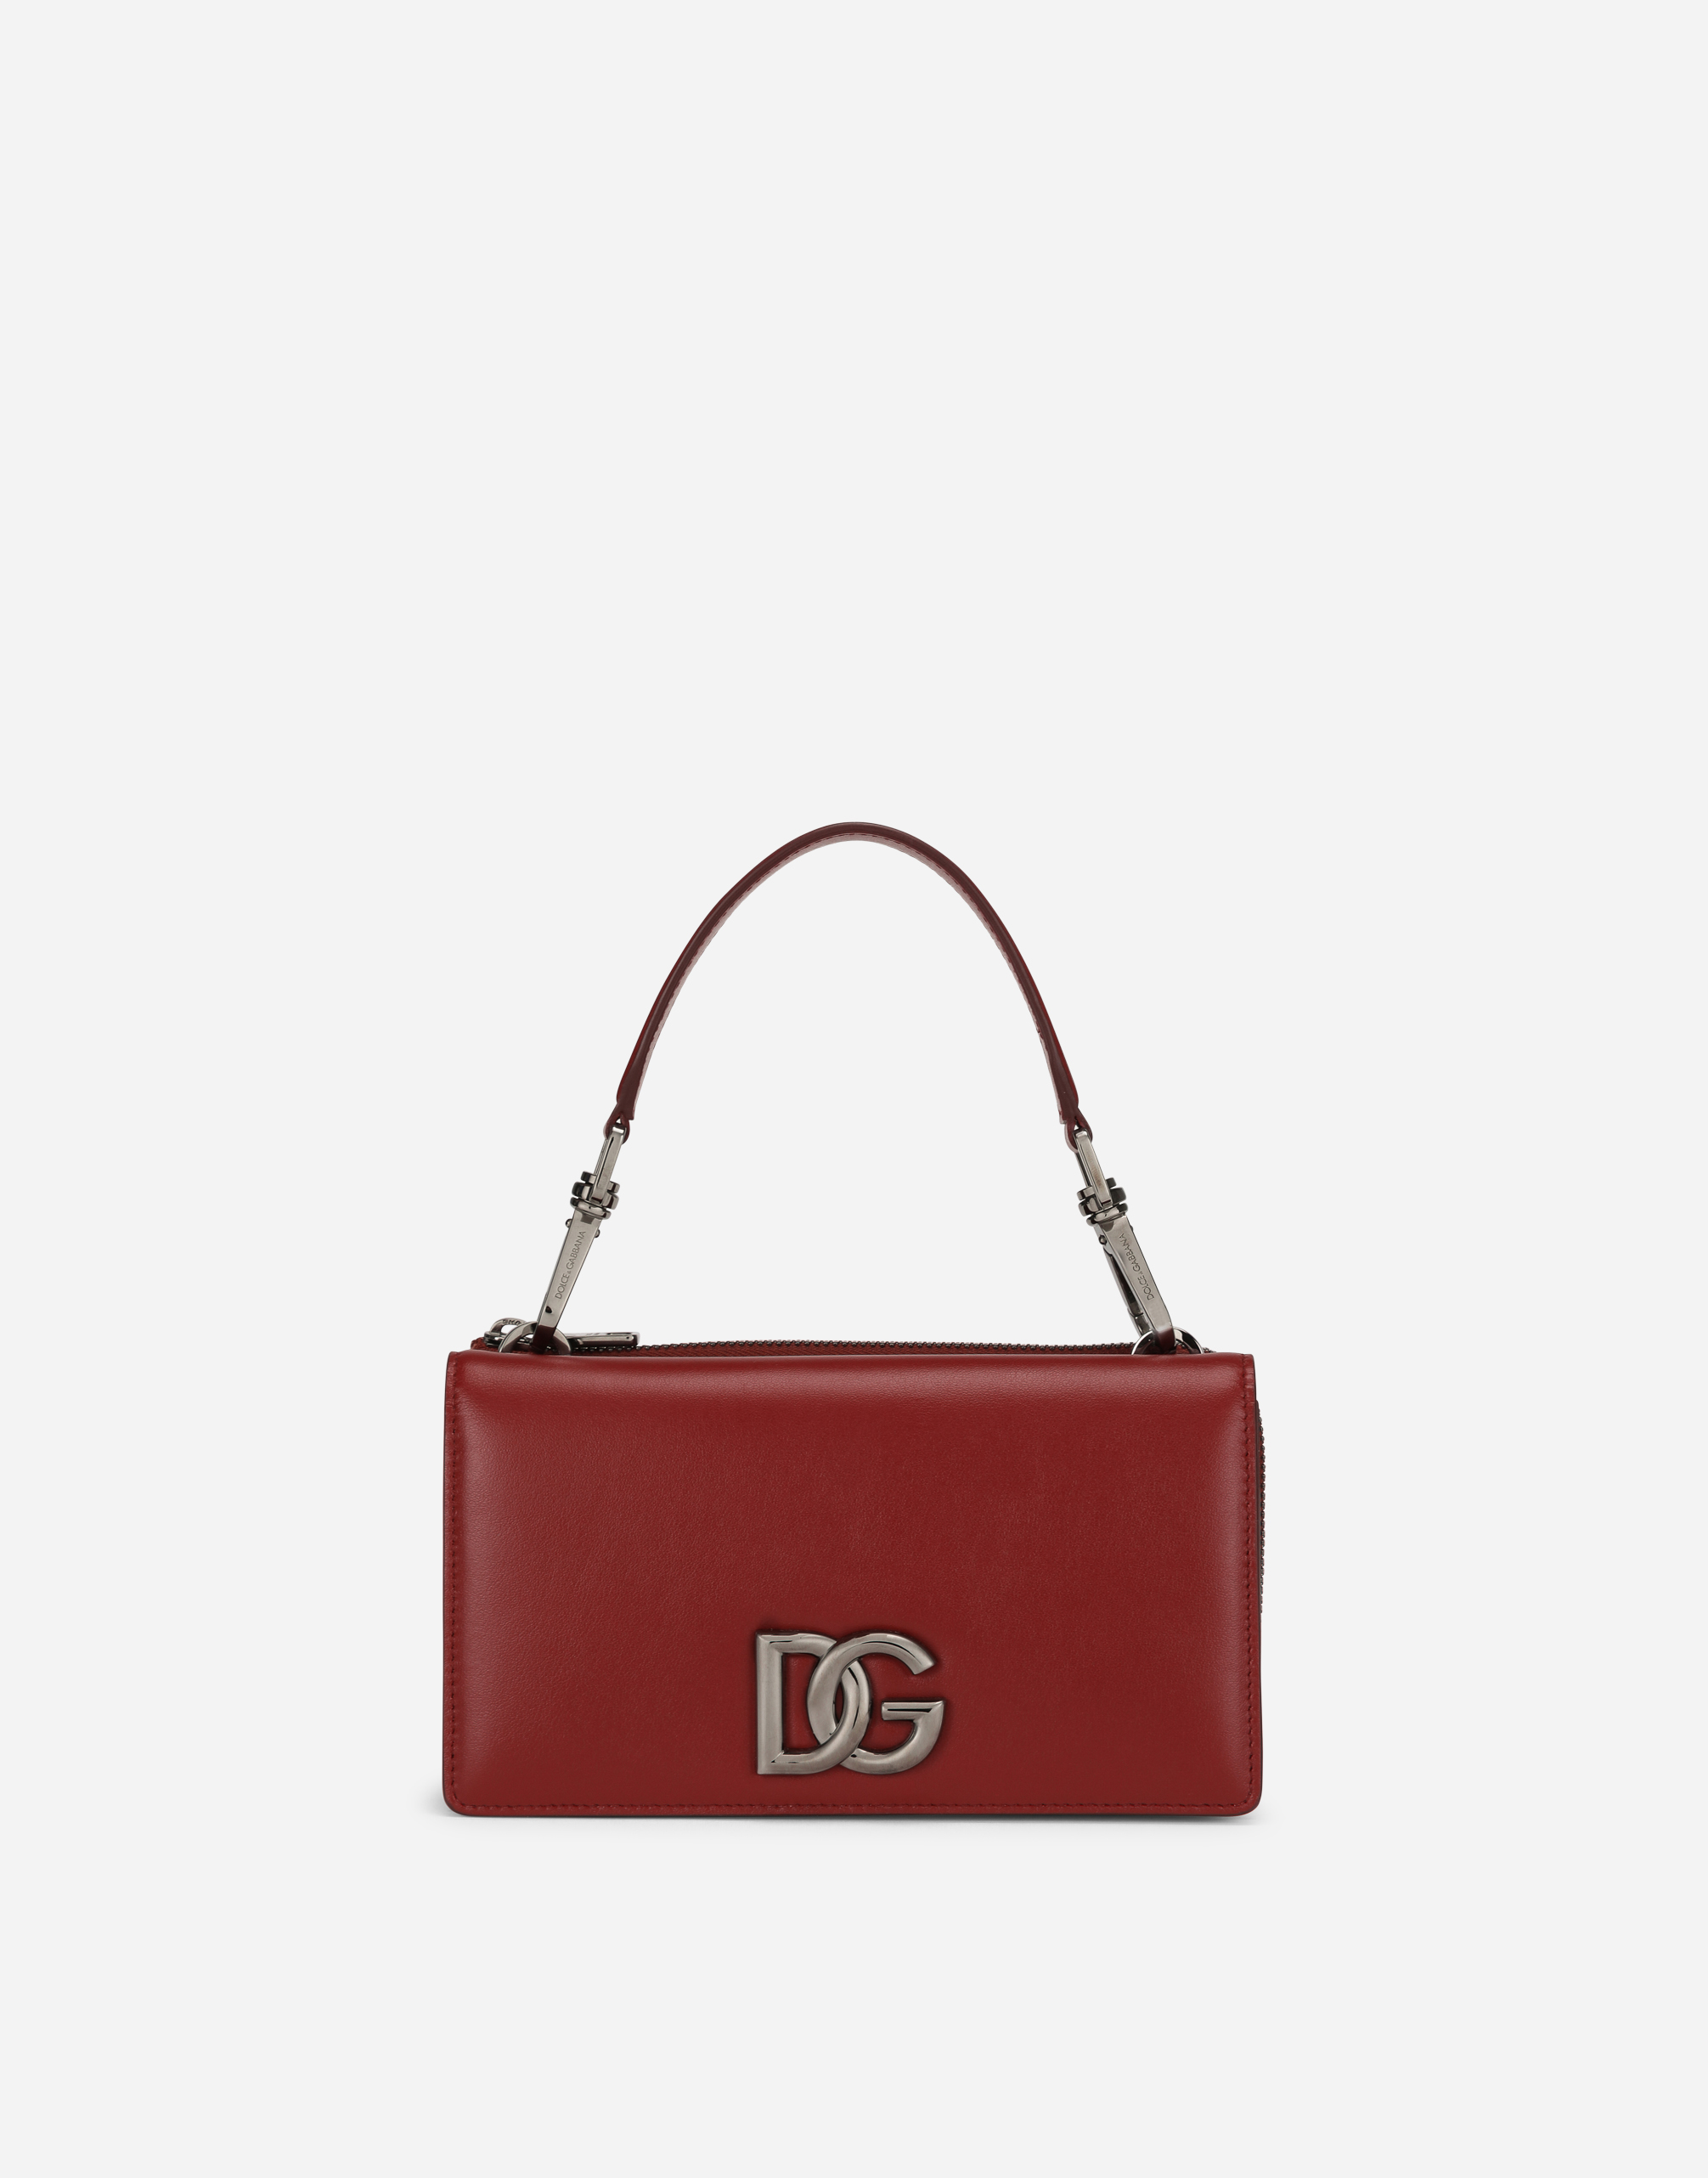 Mini handbag with strap in Bordeaux